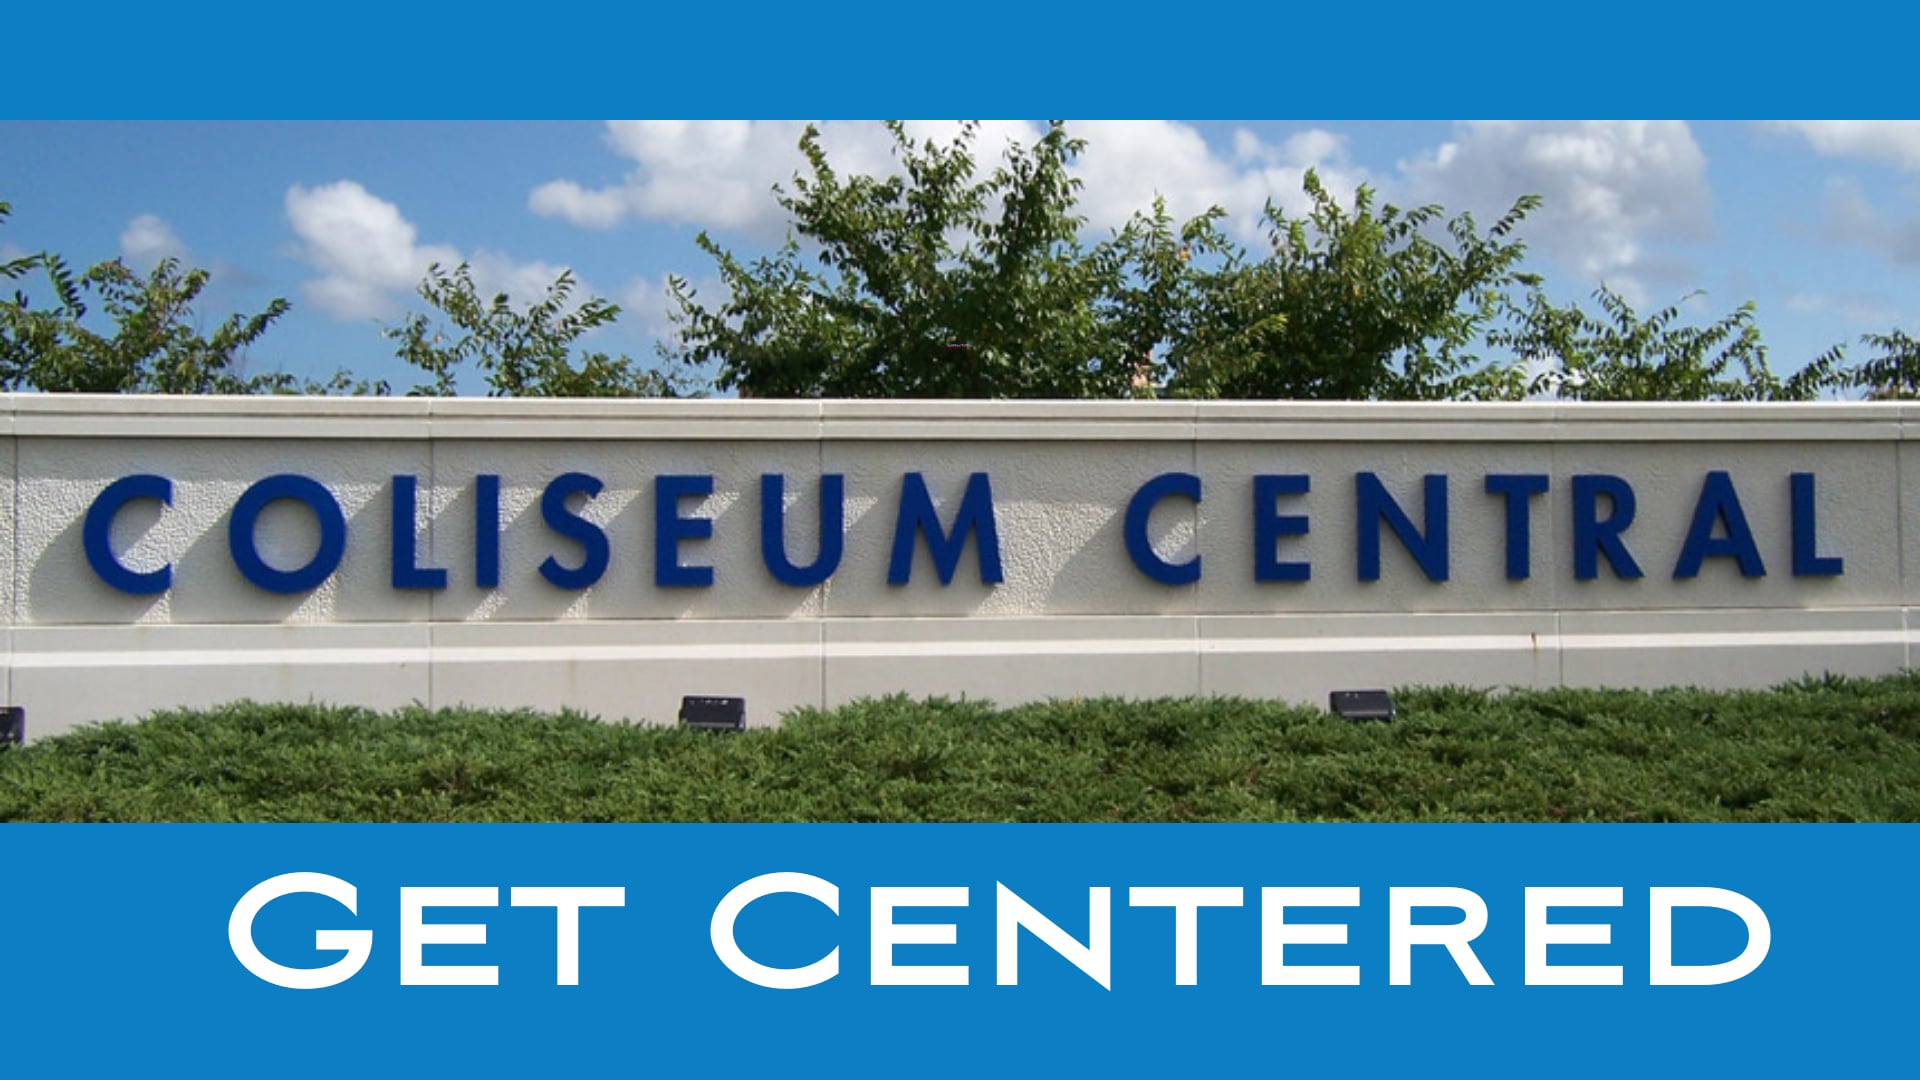 Coliseum Central - Get Centered